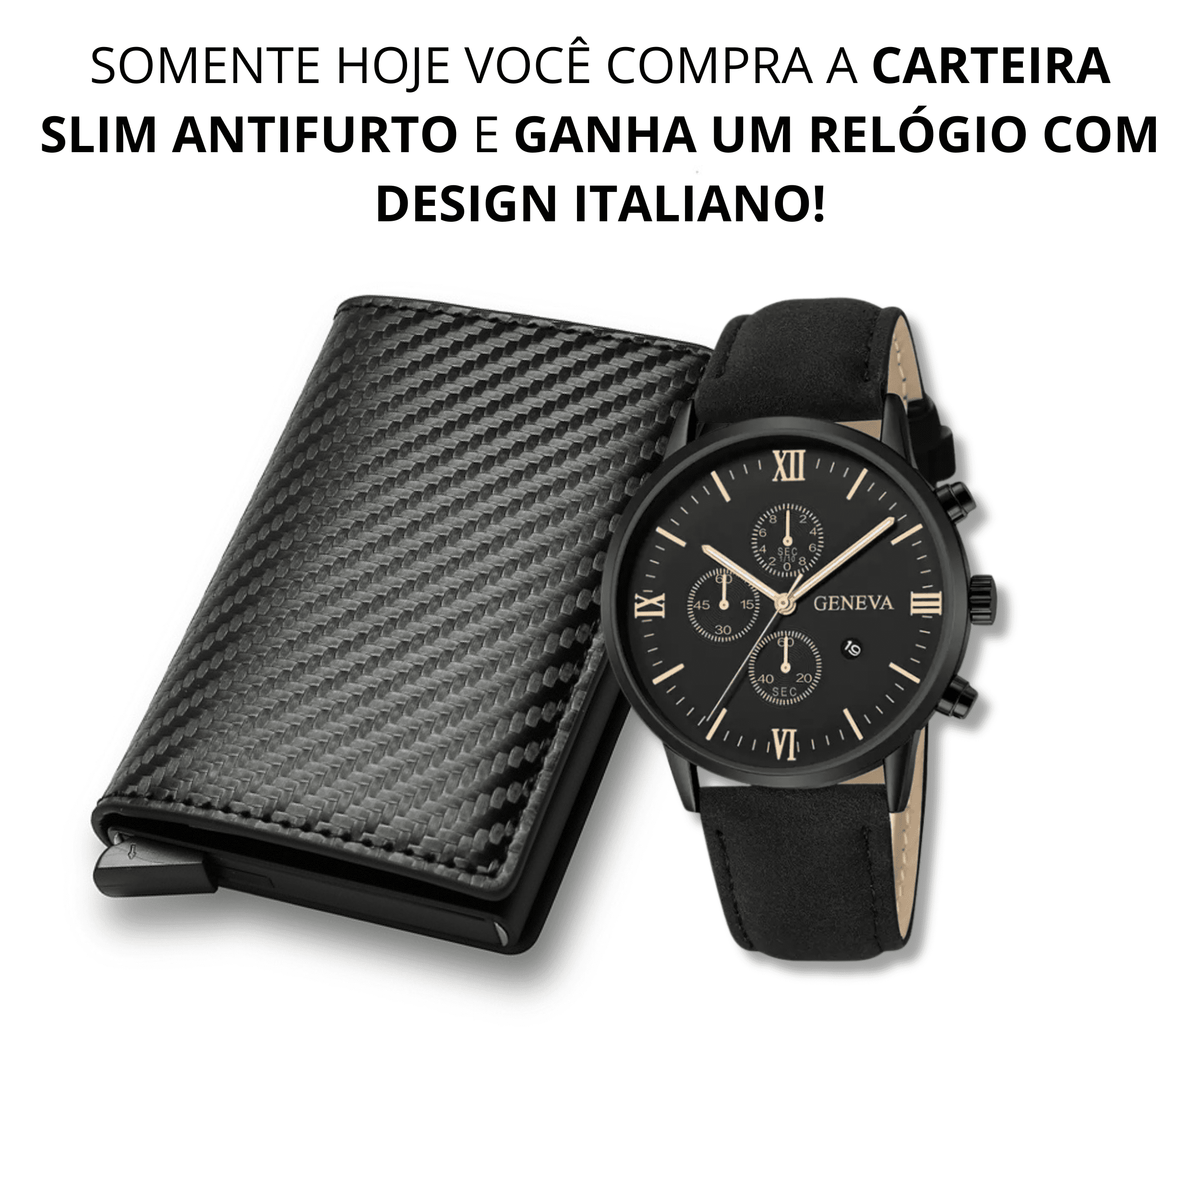 Carteira Slim Antifurto RFID Prime + Relógio Italiano